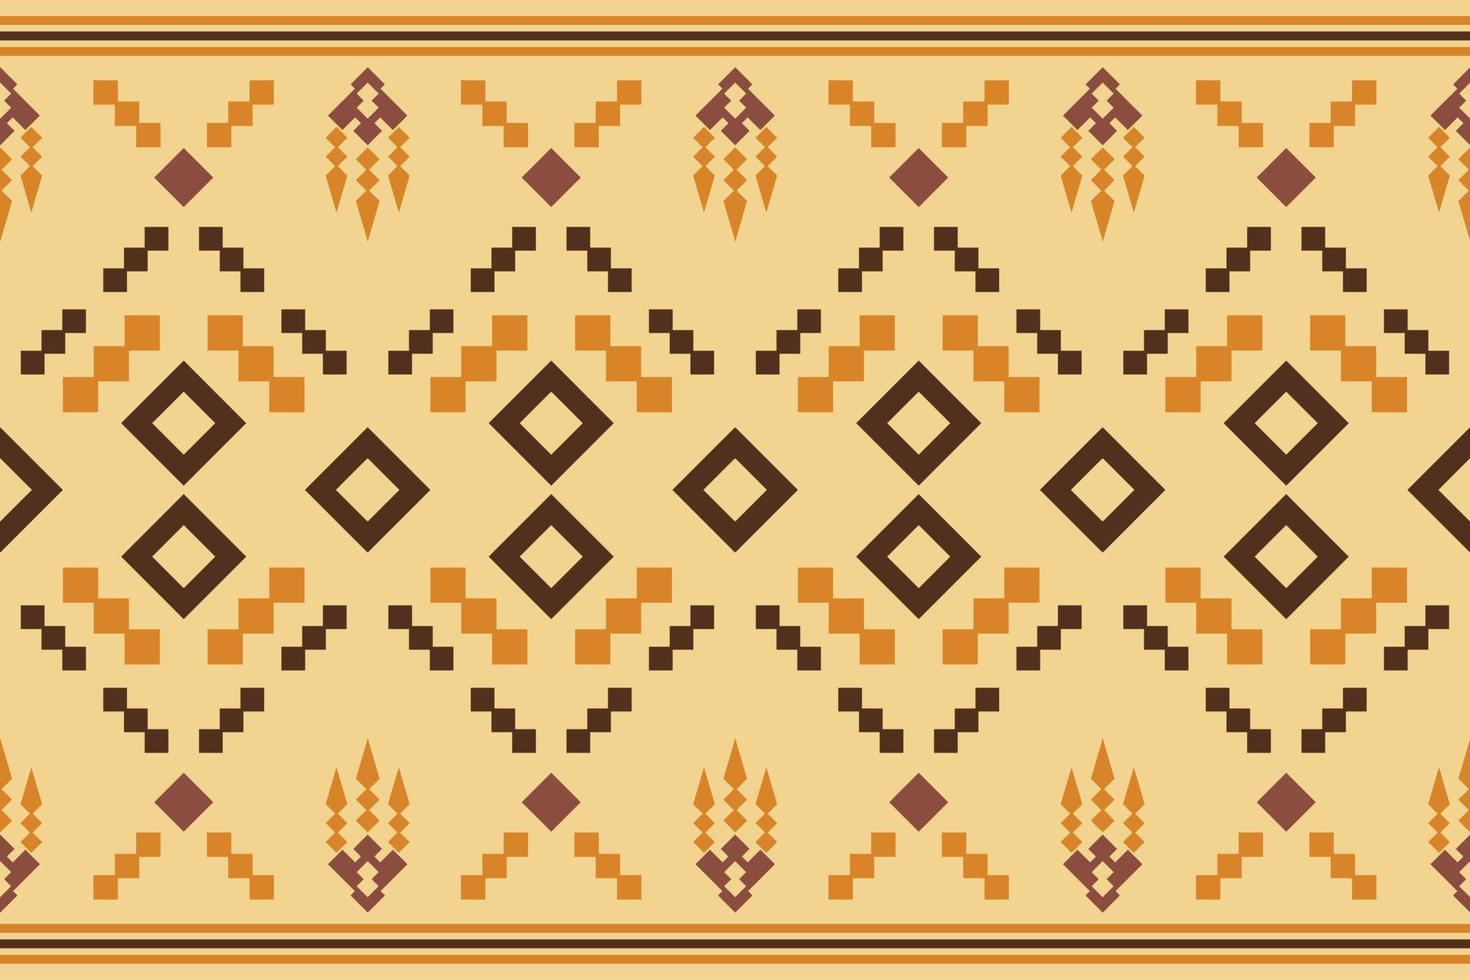 geometrischer stil des ethnischen stoffmusters. sarong aztekisches ethnisches orientalisches muster traditioneller weißer brauner cremefarbener hintergrund. abstrakt, vektor, illustration. Verwendung für Textur, Kleidung, Verpackung, Dekoration, Teppich. vektor